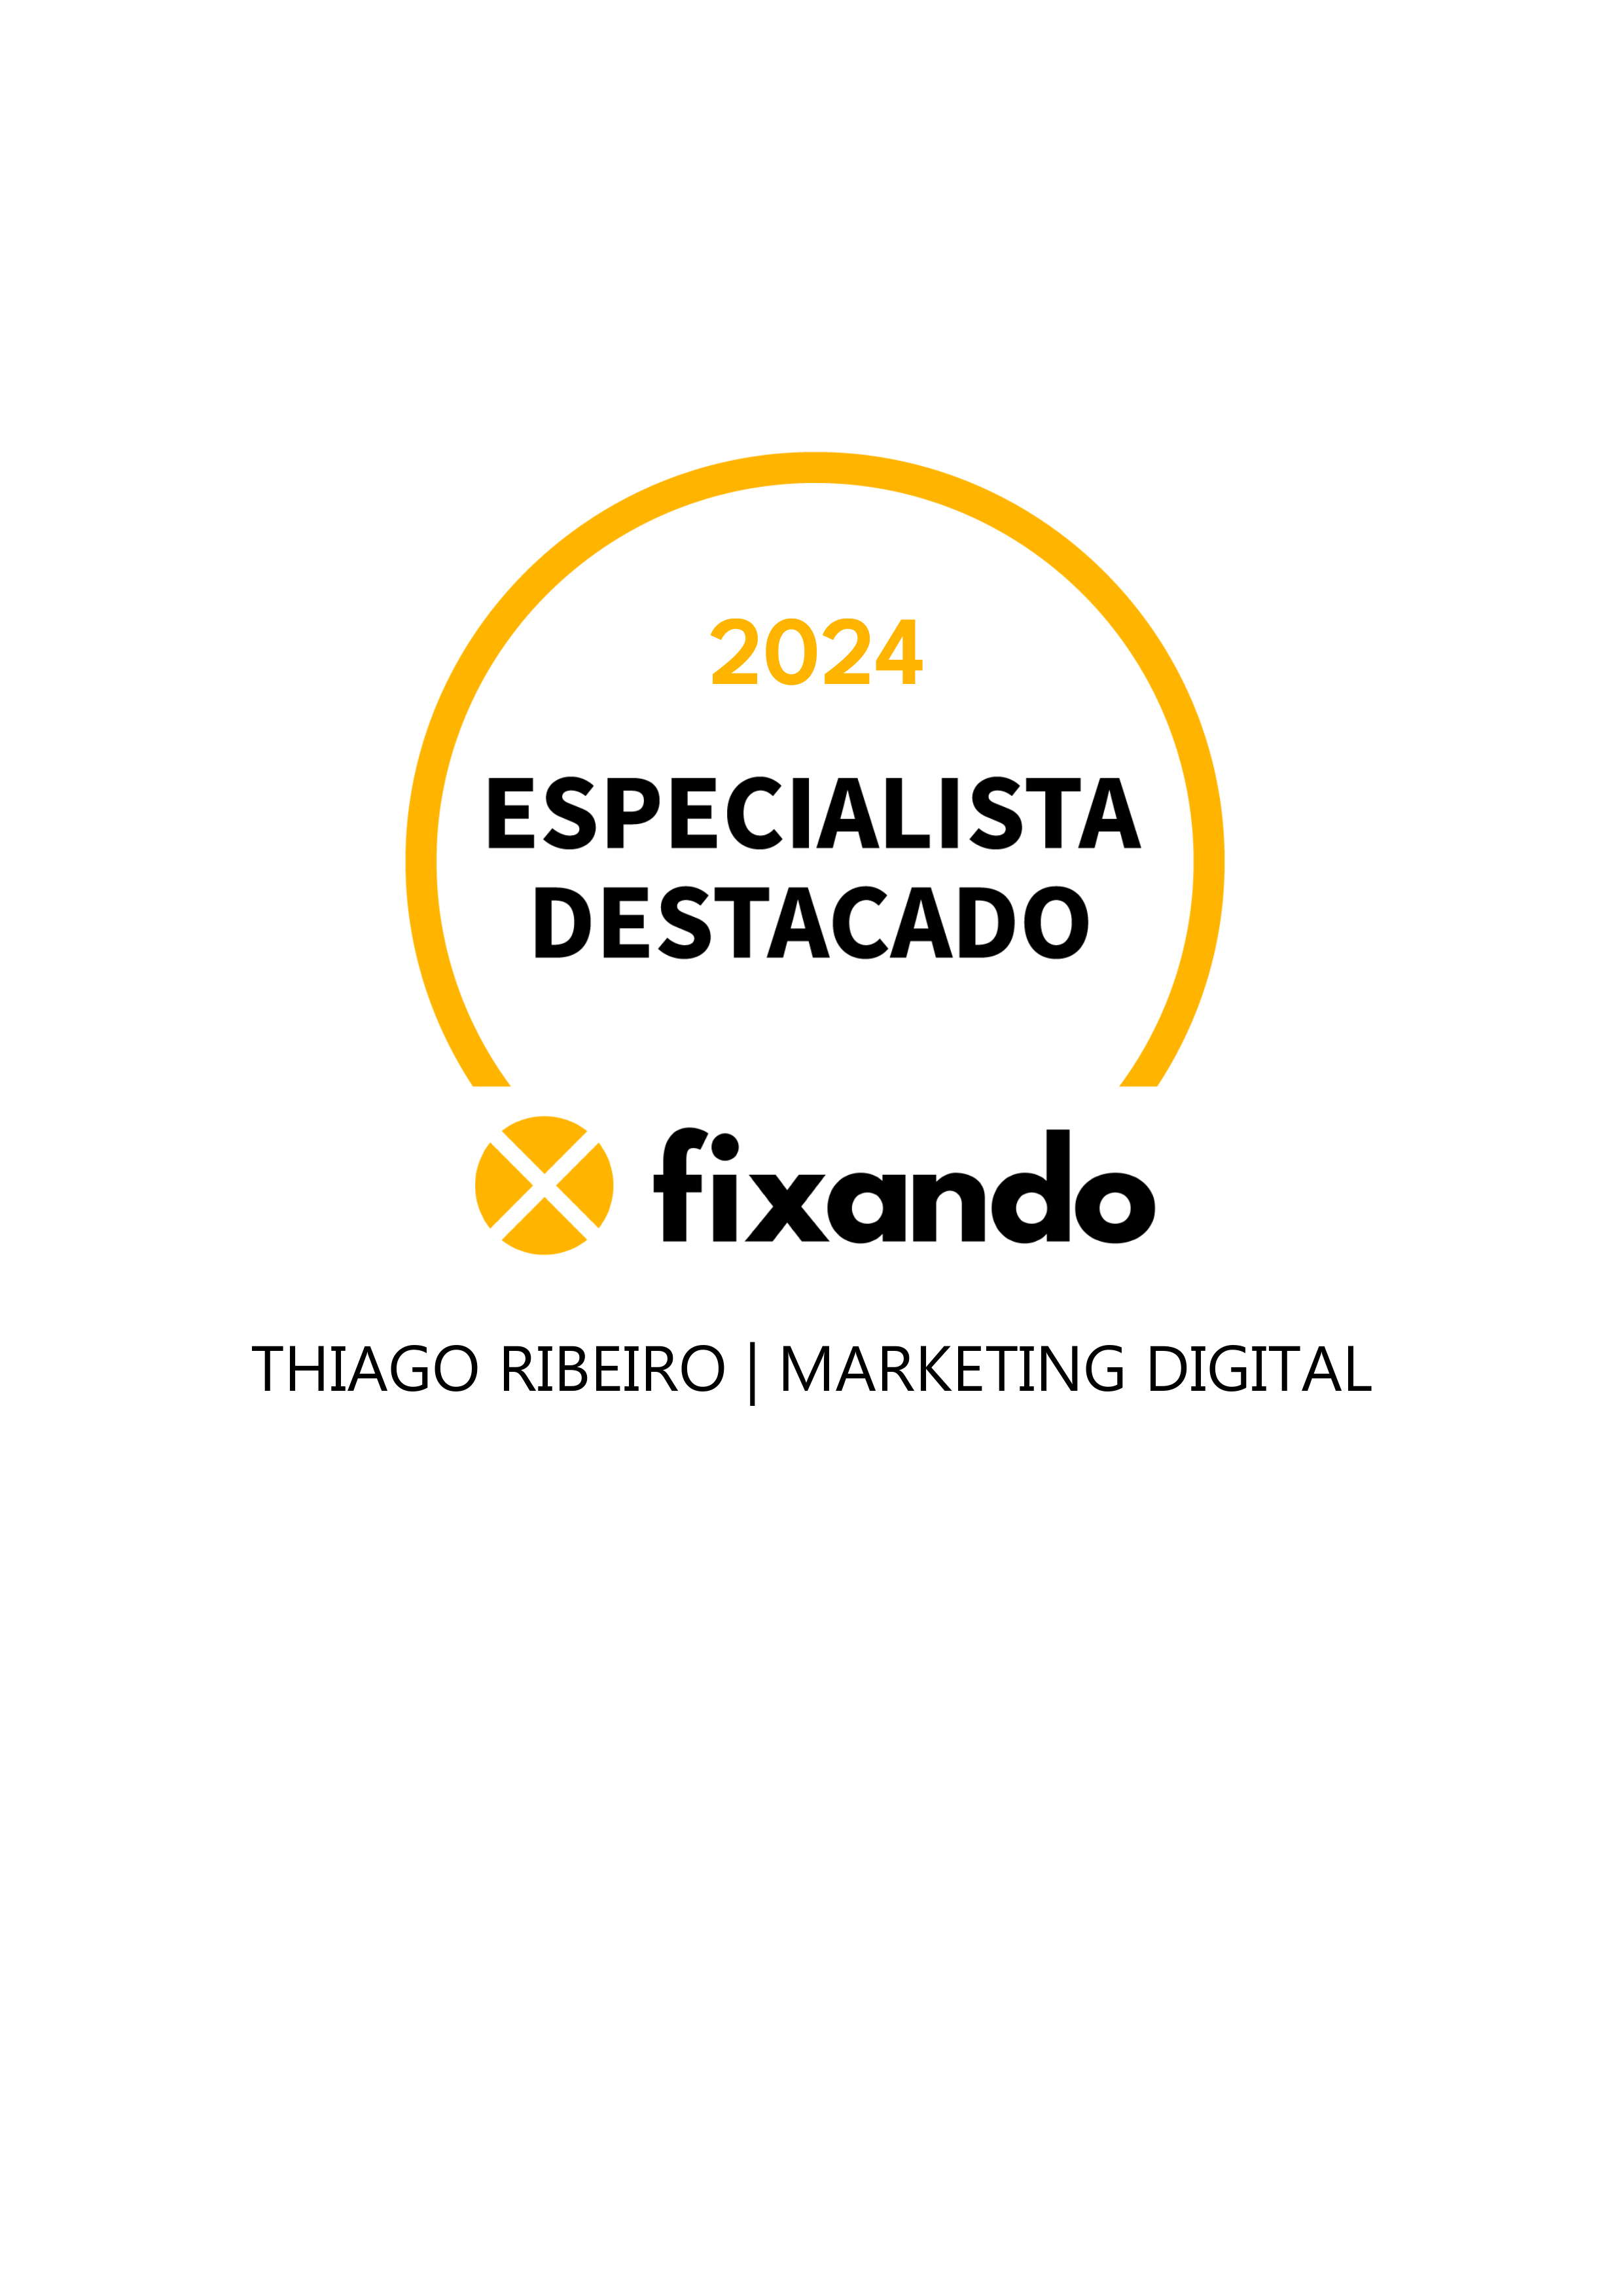 Thiago Ribeiro | Marketing Digital - Caldas da Rainha - Marketing